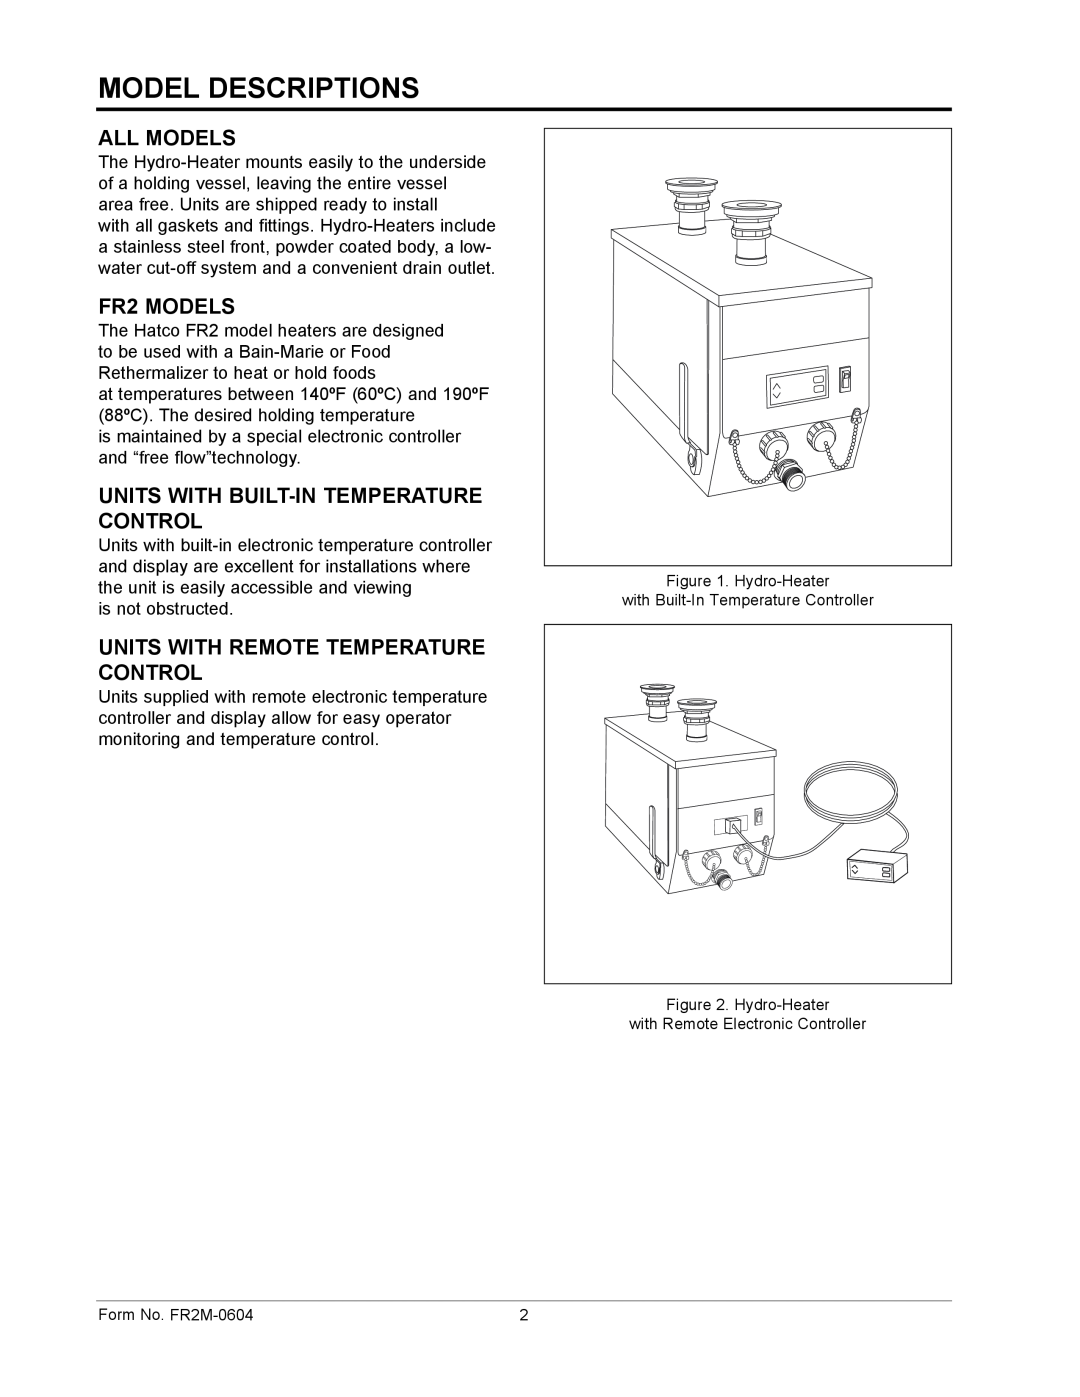 Hatco FR2 Series manual Model Descriptions, All Models, FR2 MODELS, Units With Built-Intemperature Control 